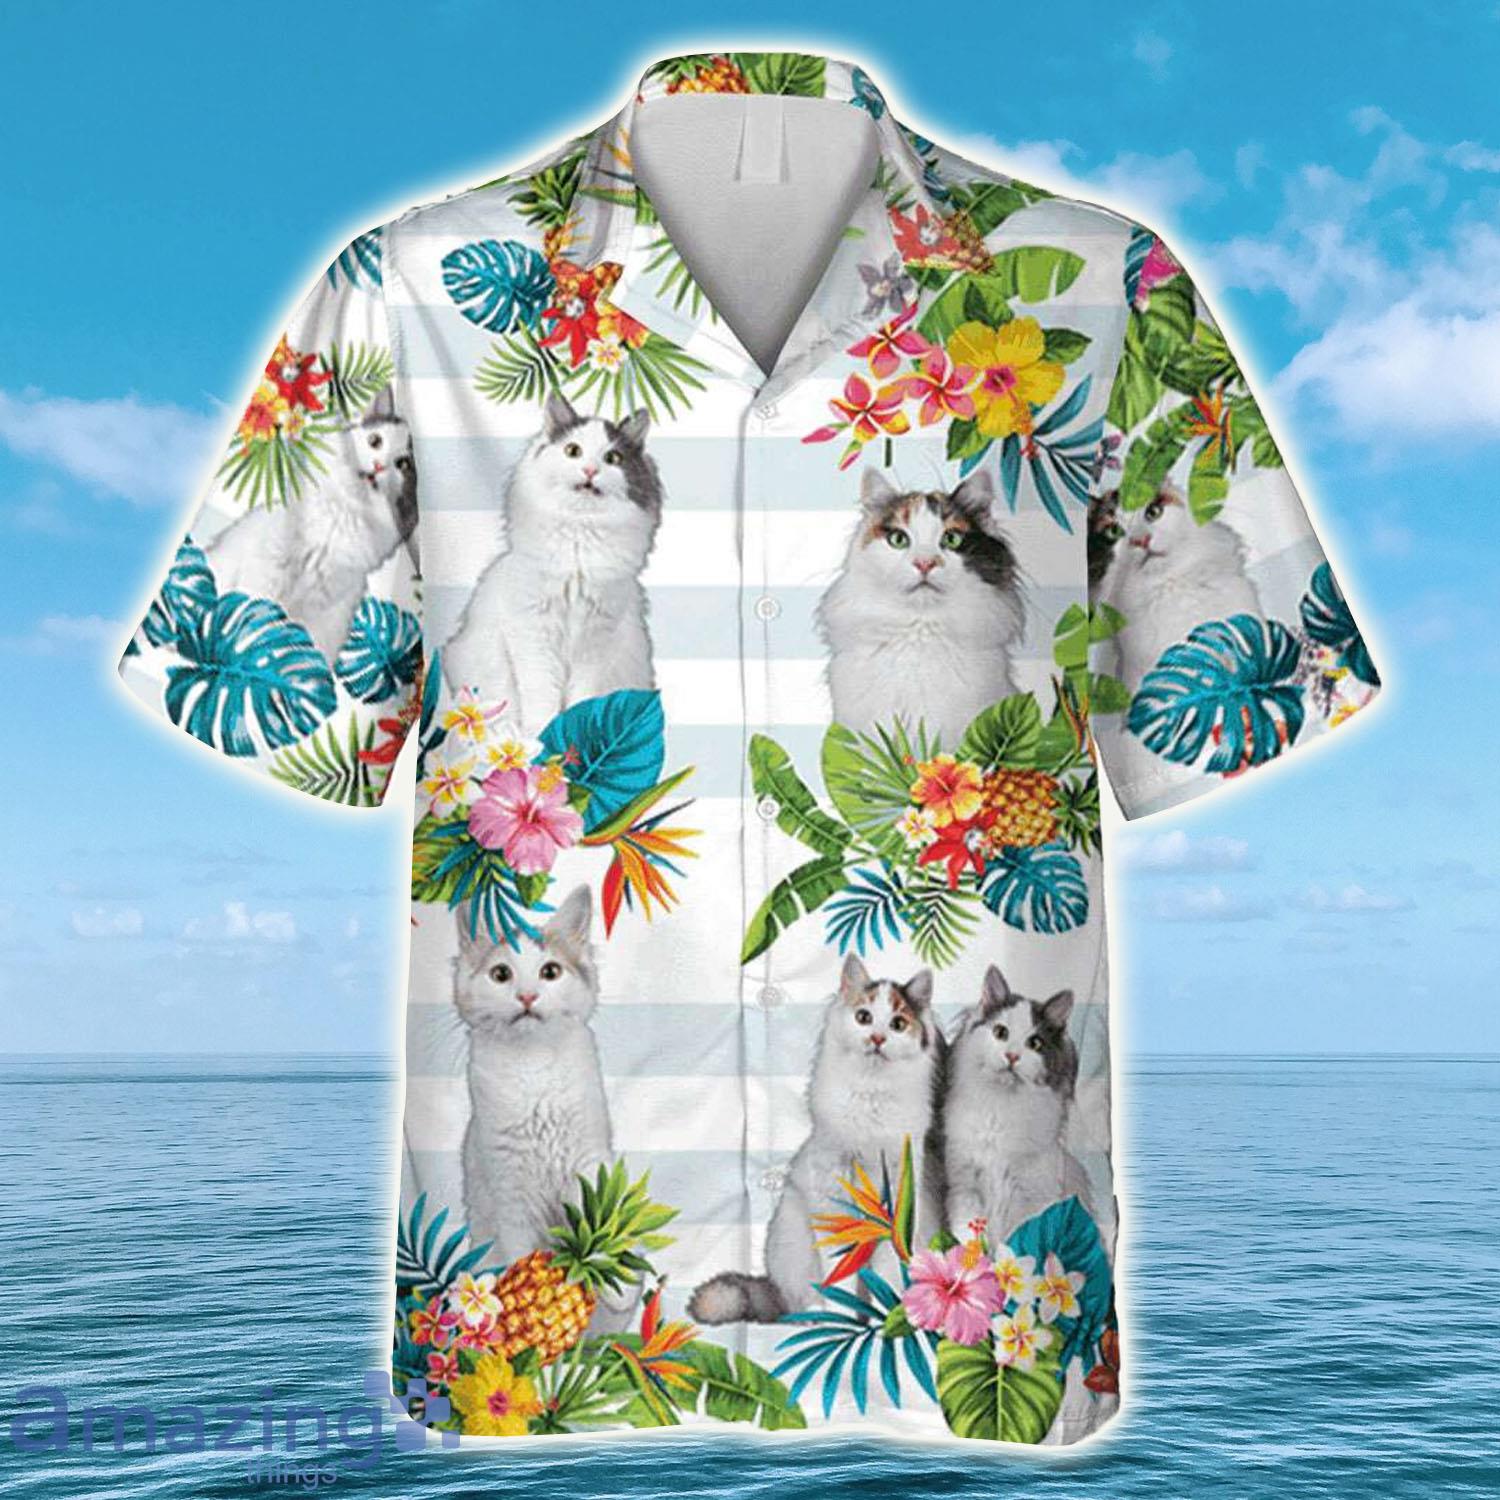 Tropical Plants Turkish Van Cat Hawaiian Shirt - Tropical Plants Turkish Van Cat Hawaiian Shirt